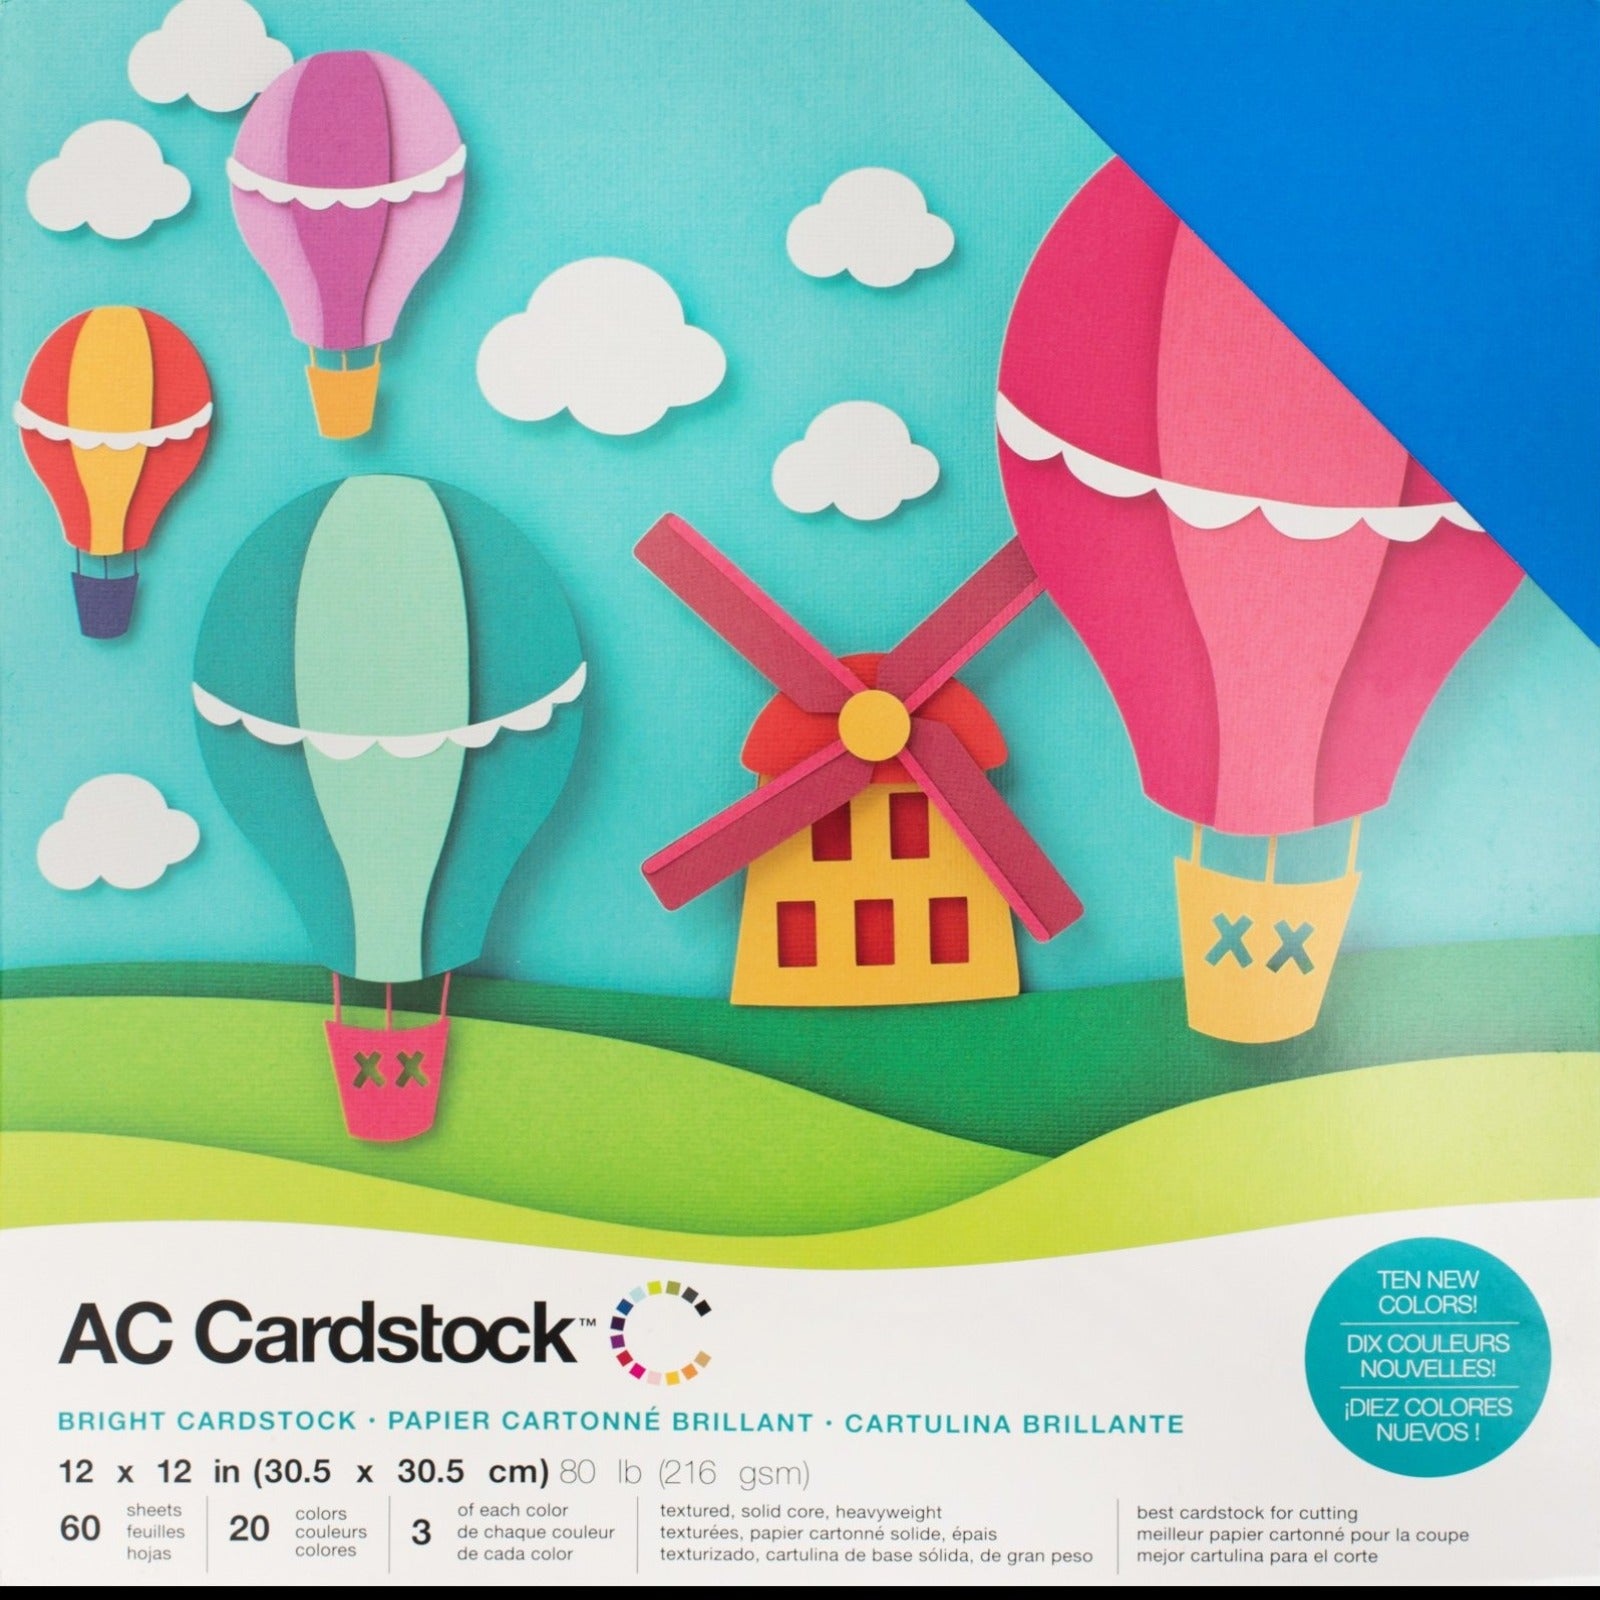 Cardstock 12 x 12, 10 pieces, 230g. – Fararti